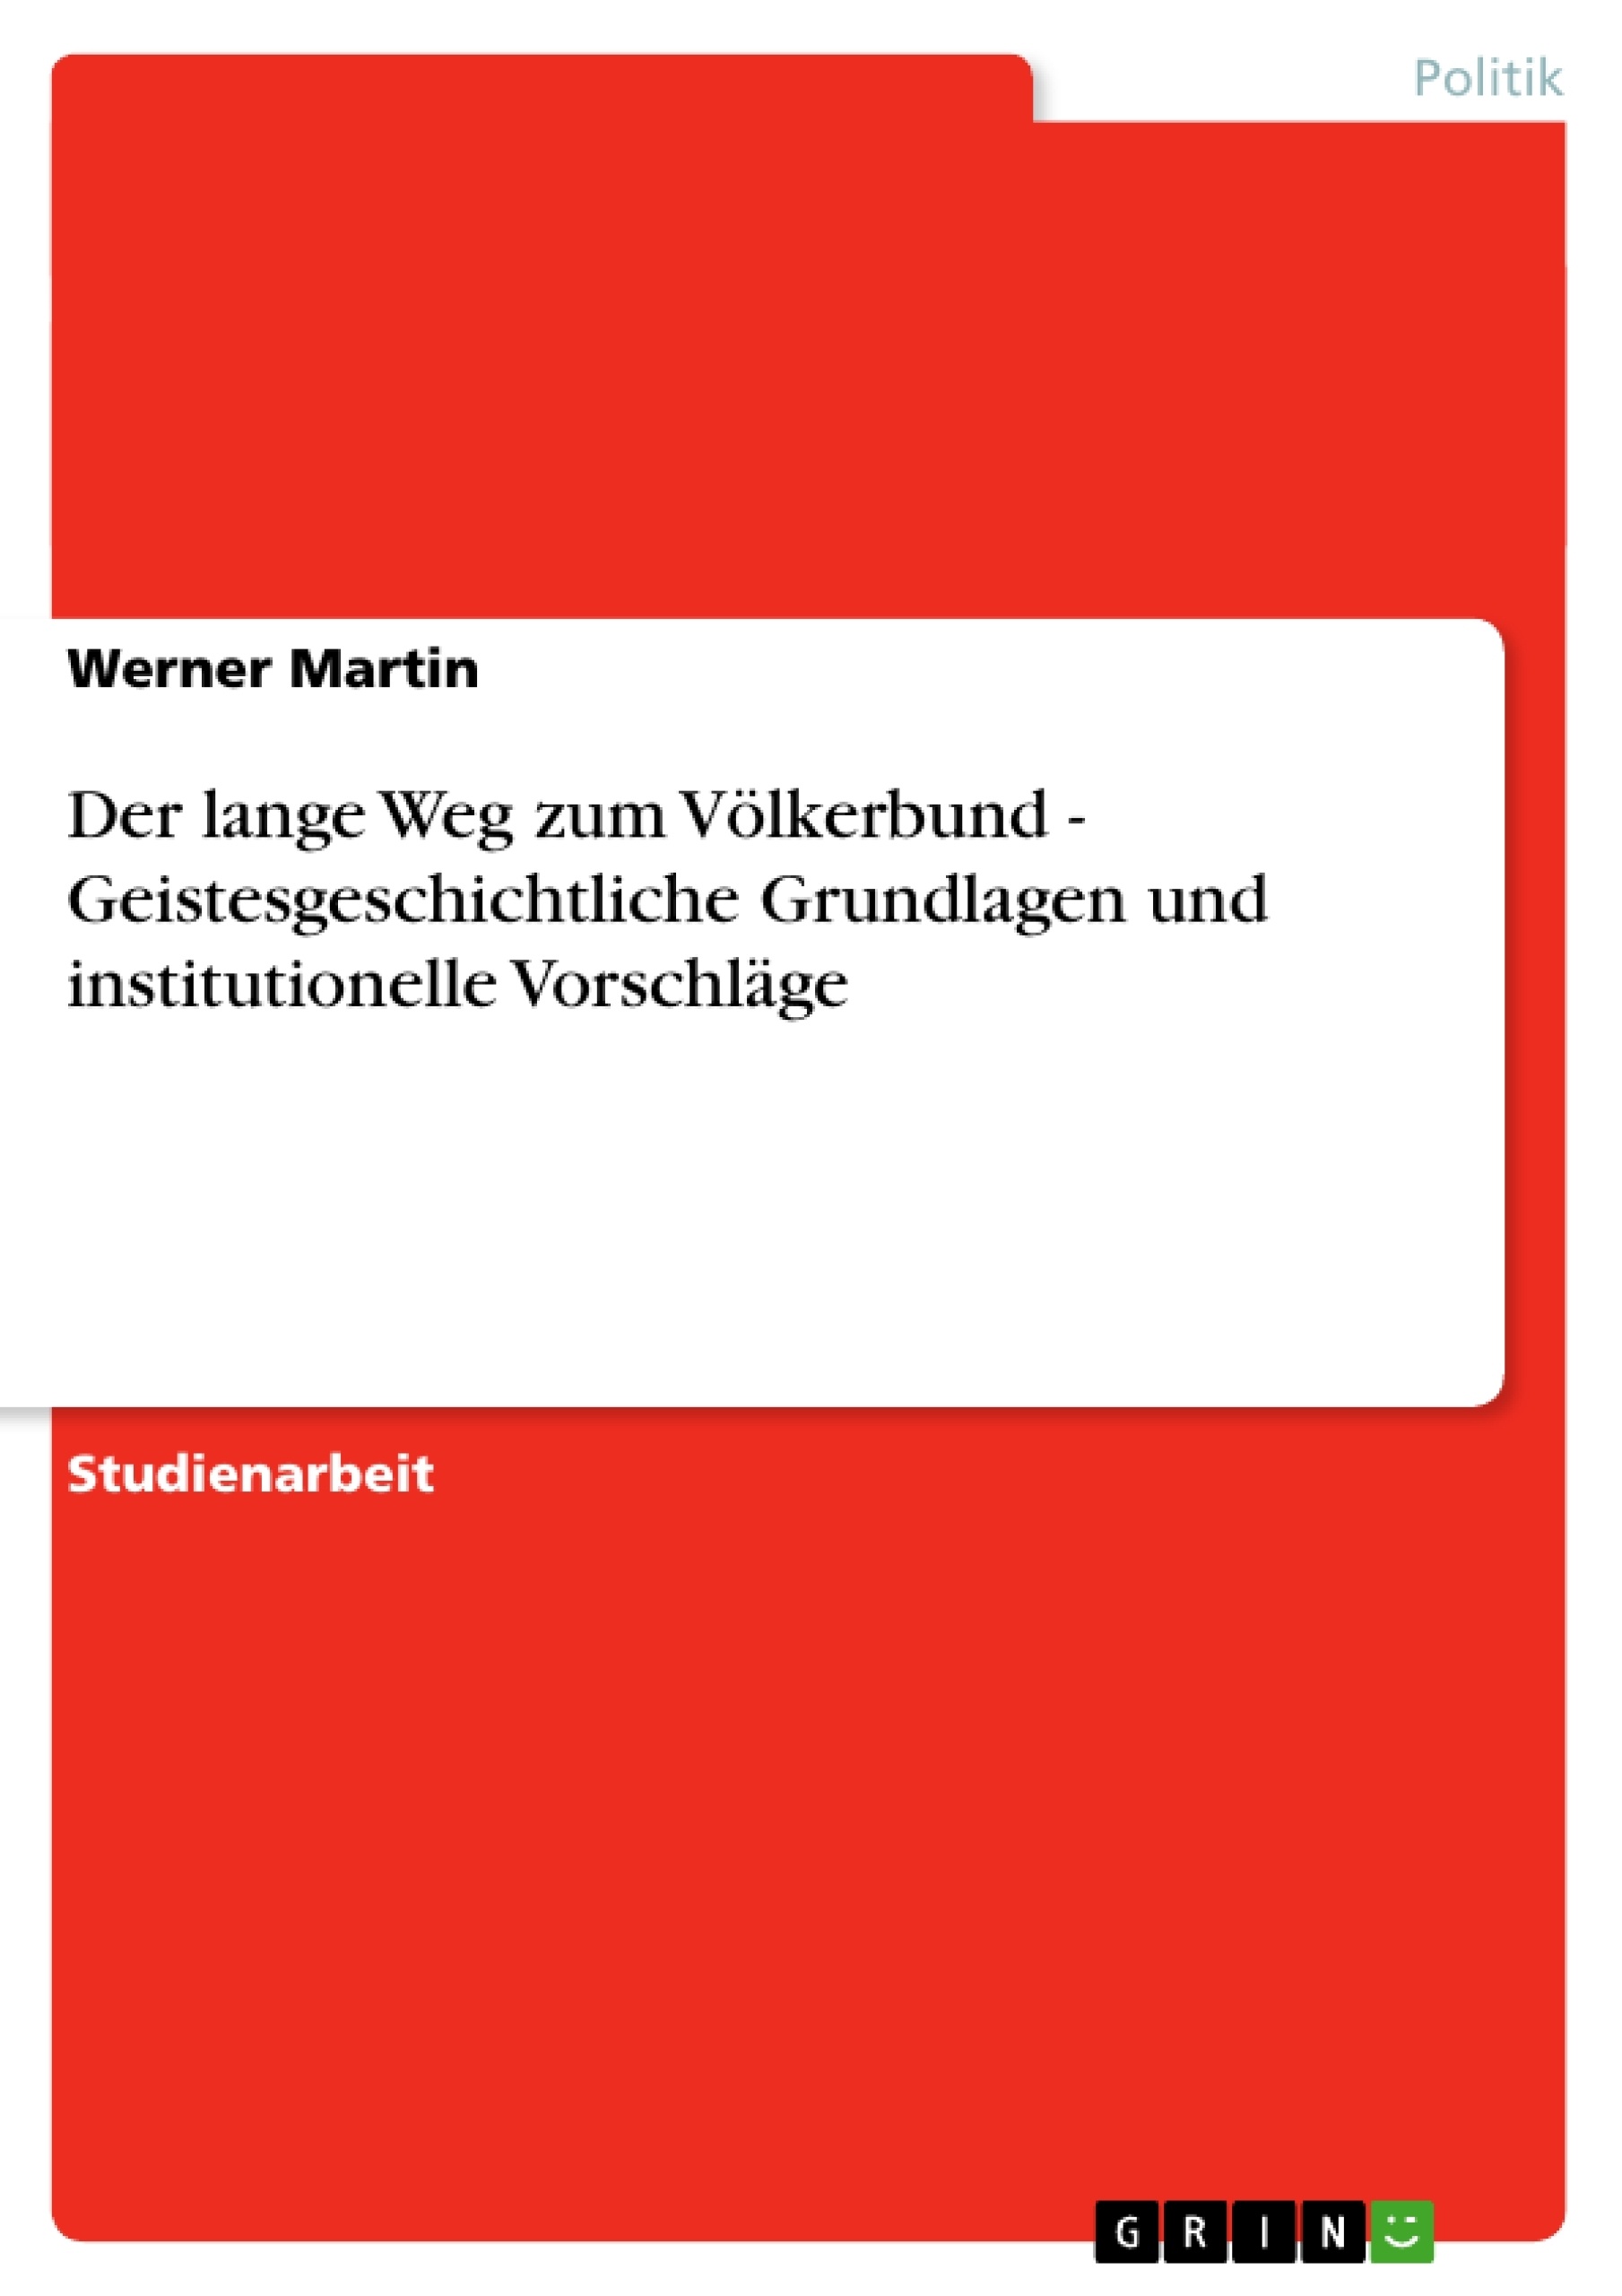 Title: Der lange Weg zum Völkerbund - Geistesgeschichtliche Grundlagen und institutionelle Vorschläge